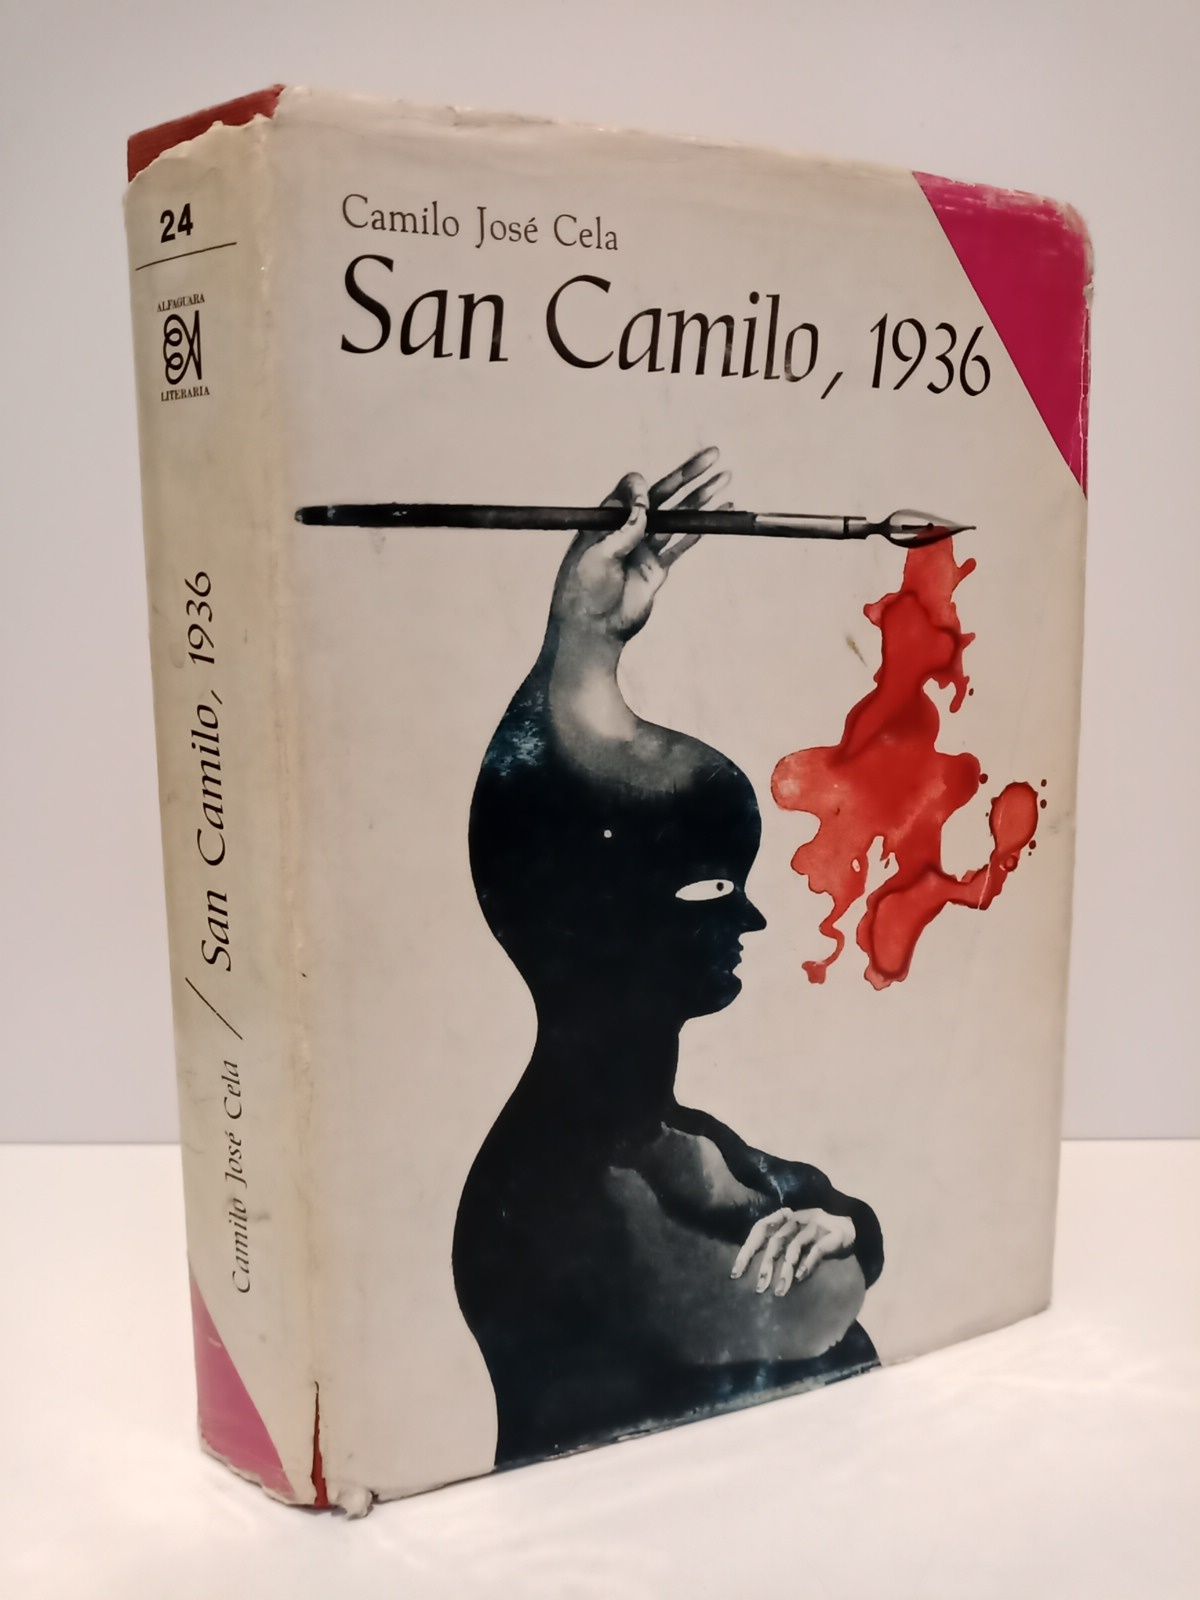 CELA, Camilo Jos - Vsperas, festividad y octava de San Camilo del ao 1936 en Madrid